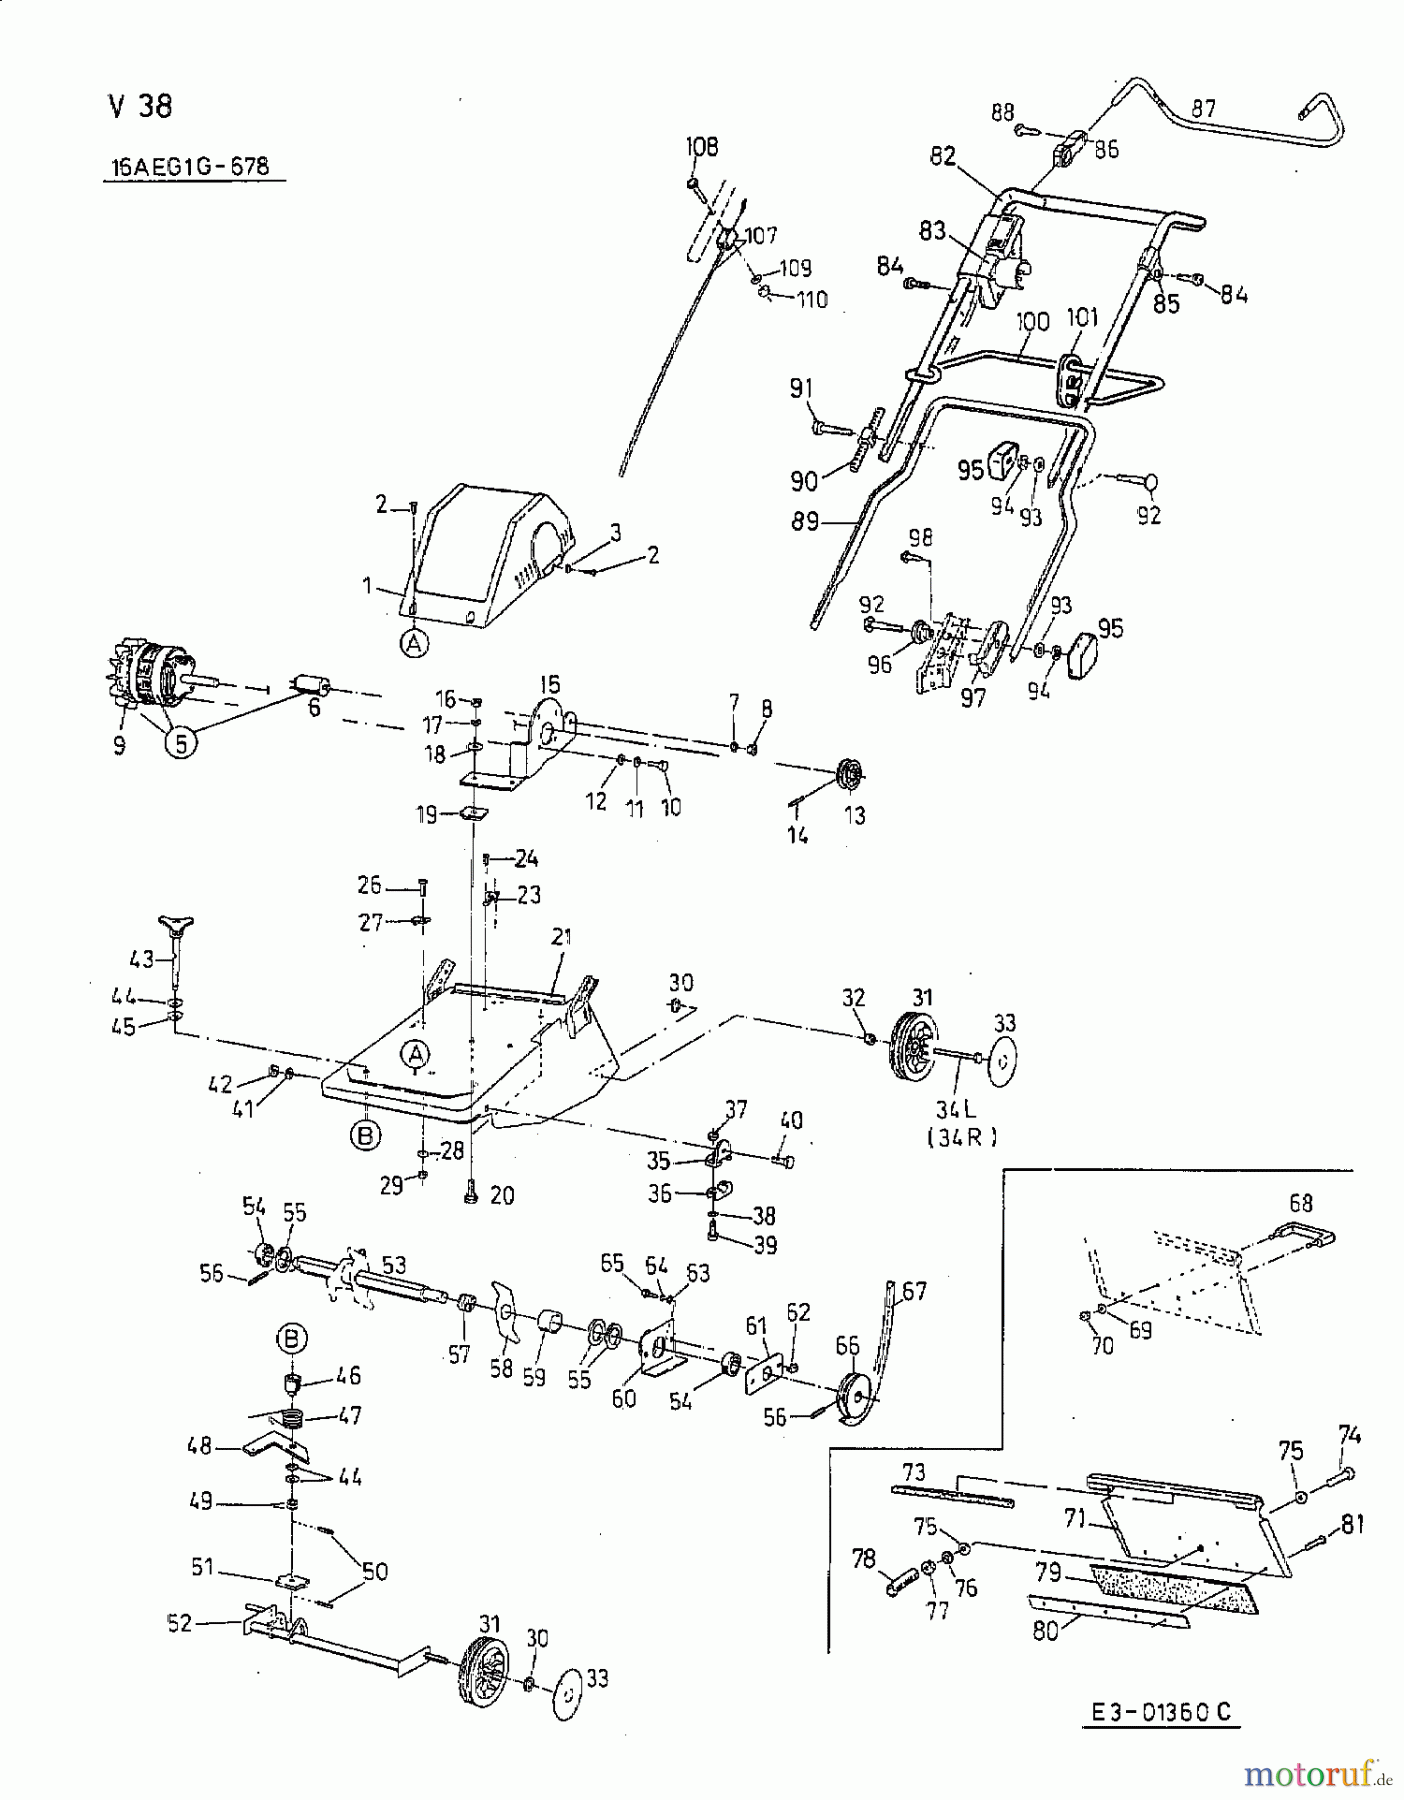  MTD Elektrovertikutierer V 38 16AEG1G-678  (2001) Grundgerät